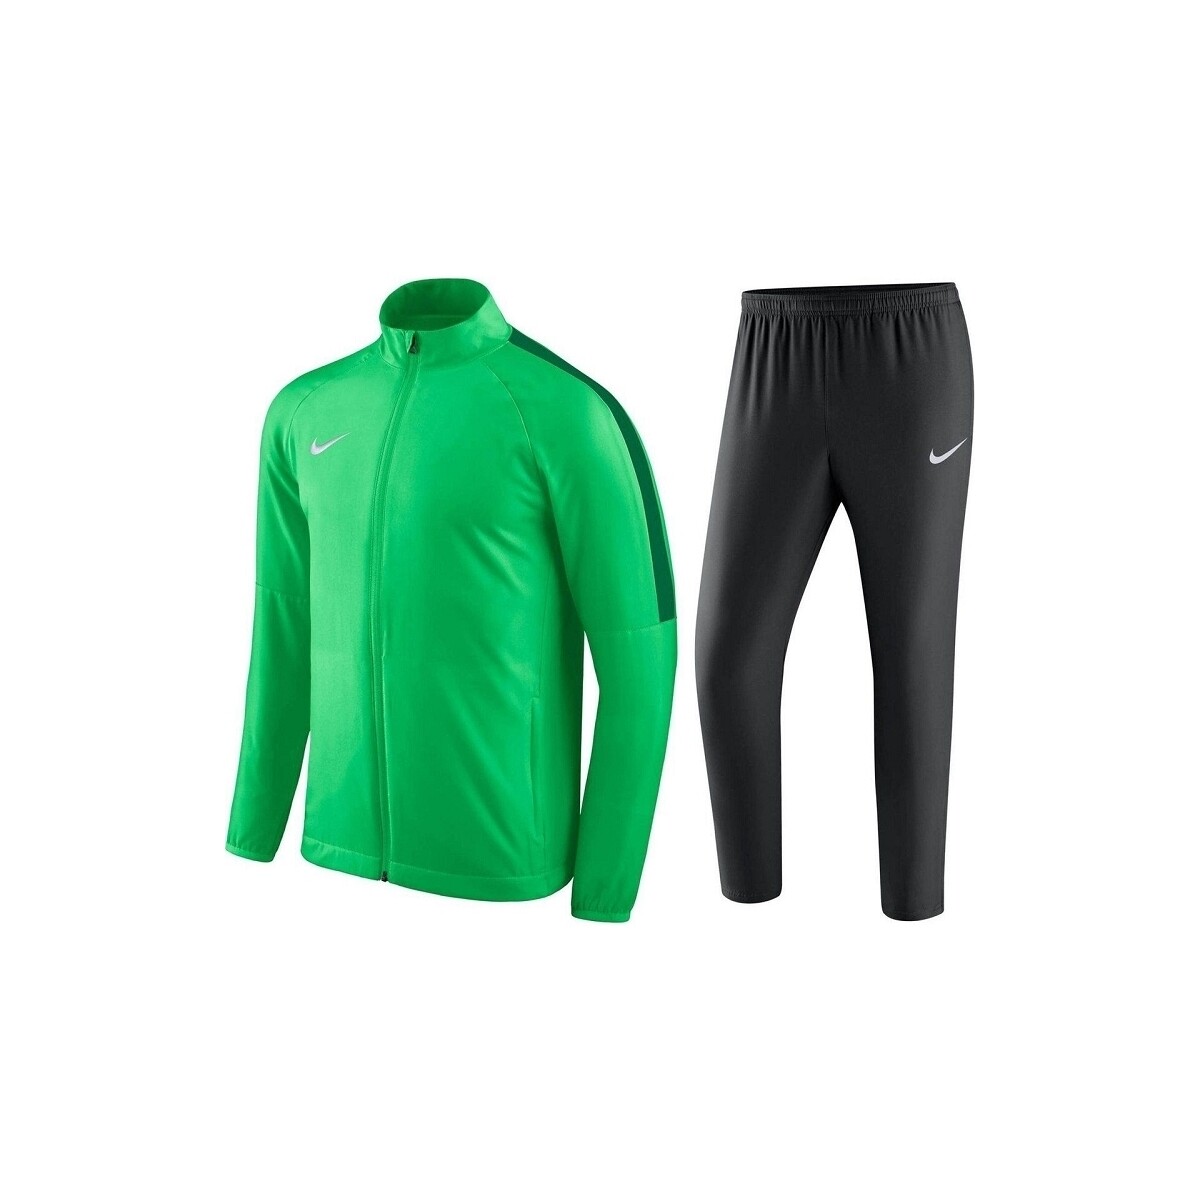 Textil Muži Teplákové soupravy Nike DRIFIT ACADEMY SOCCER Zelená